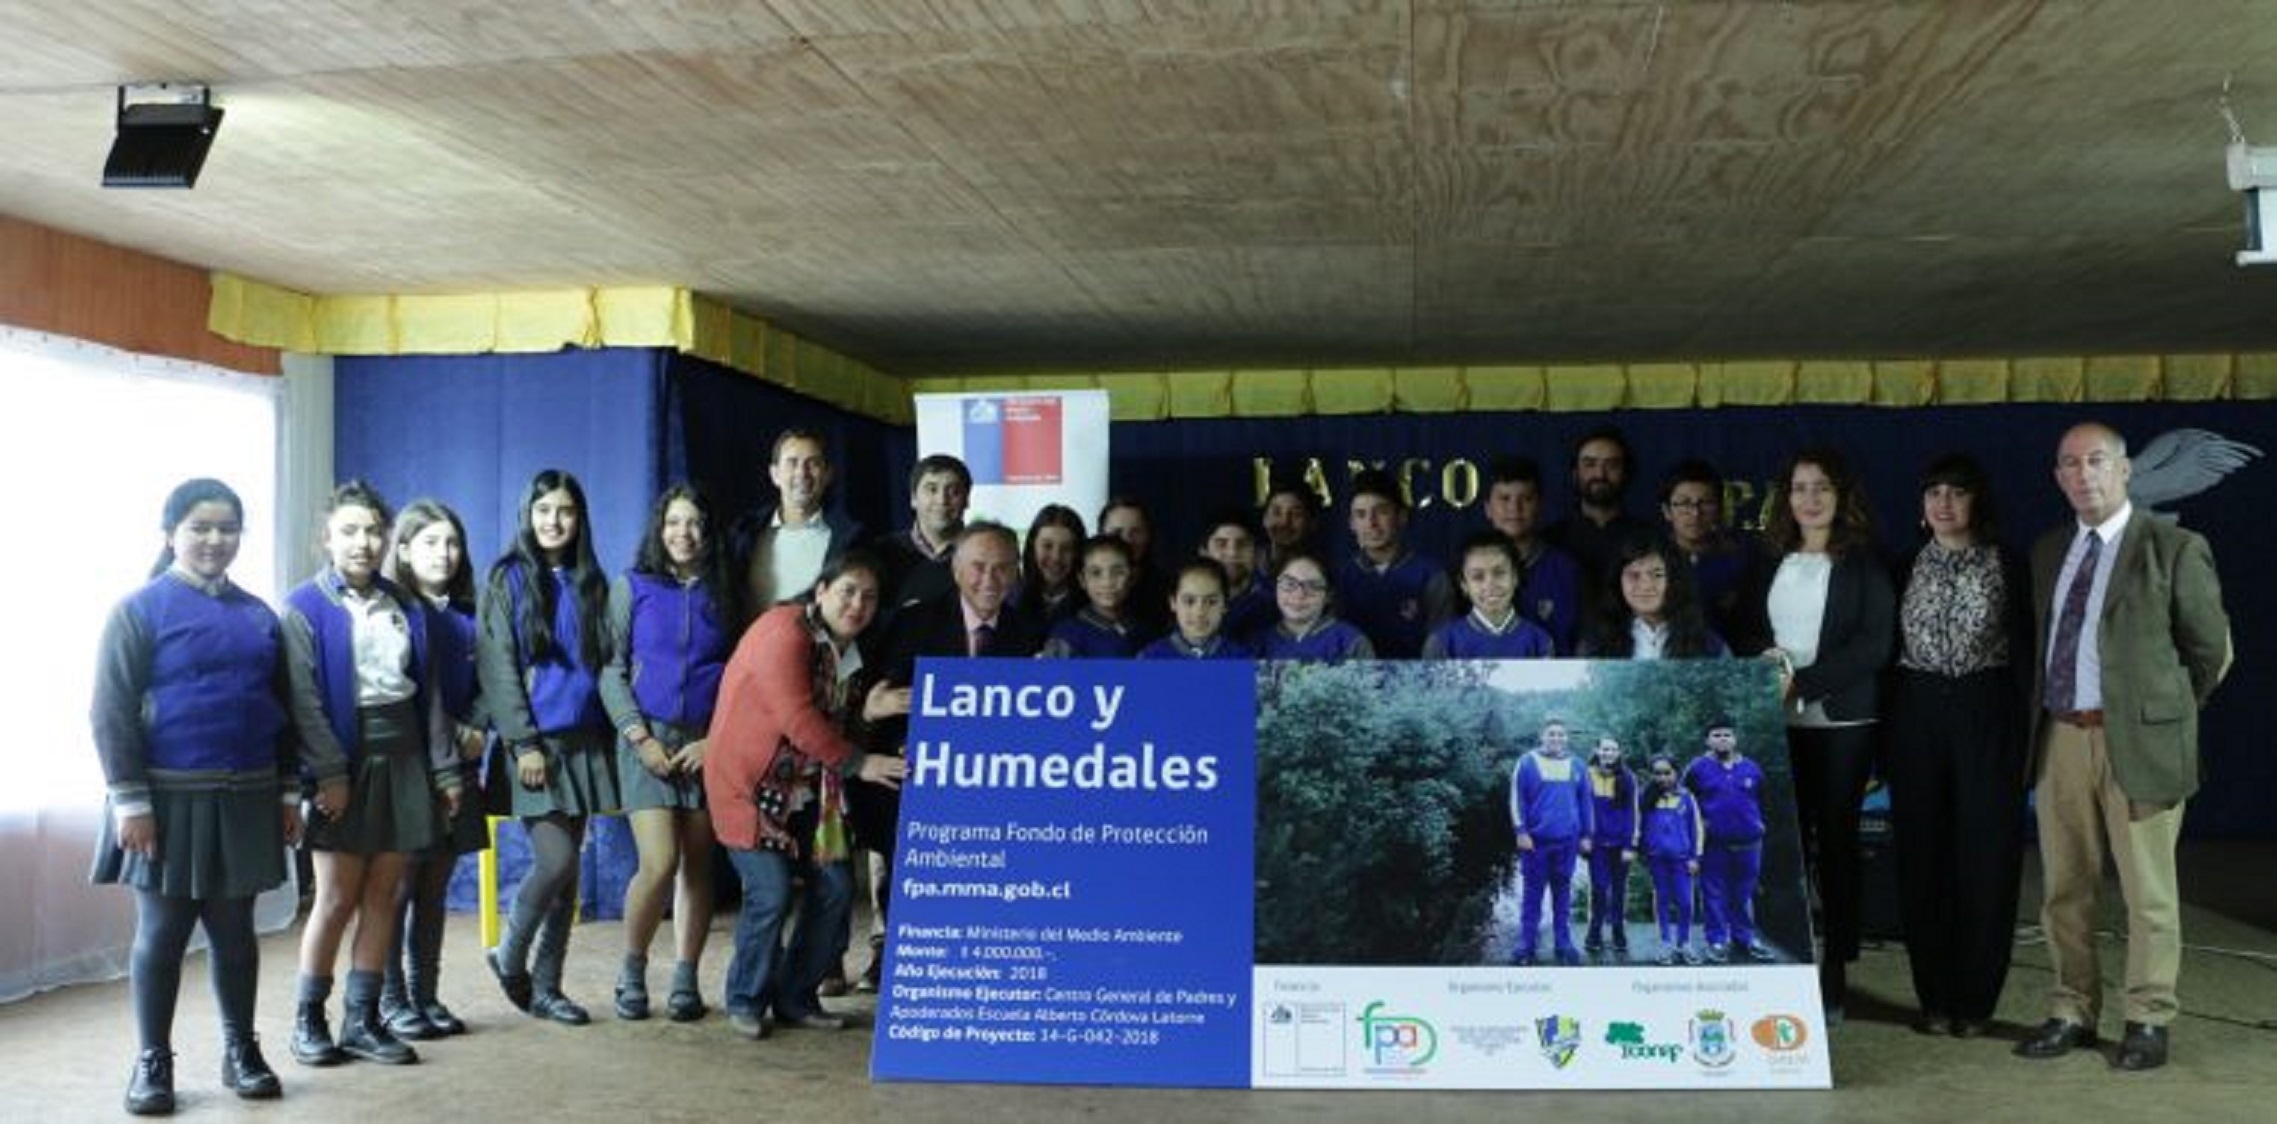  Región de Los Ríos: Escuela de Lanco recuperará humedal Leufucade con financiamiento del Fondo de Protección Ambiental